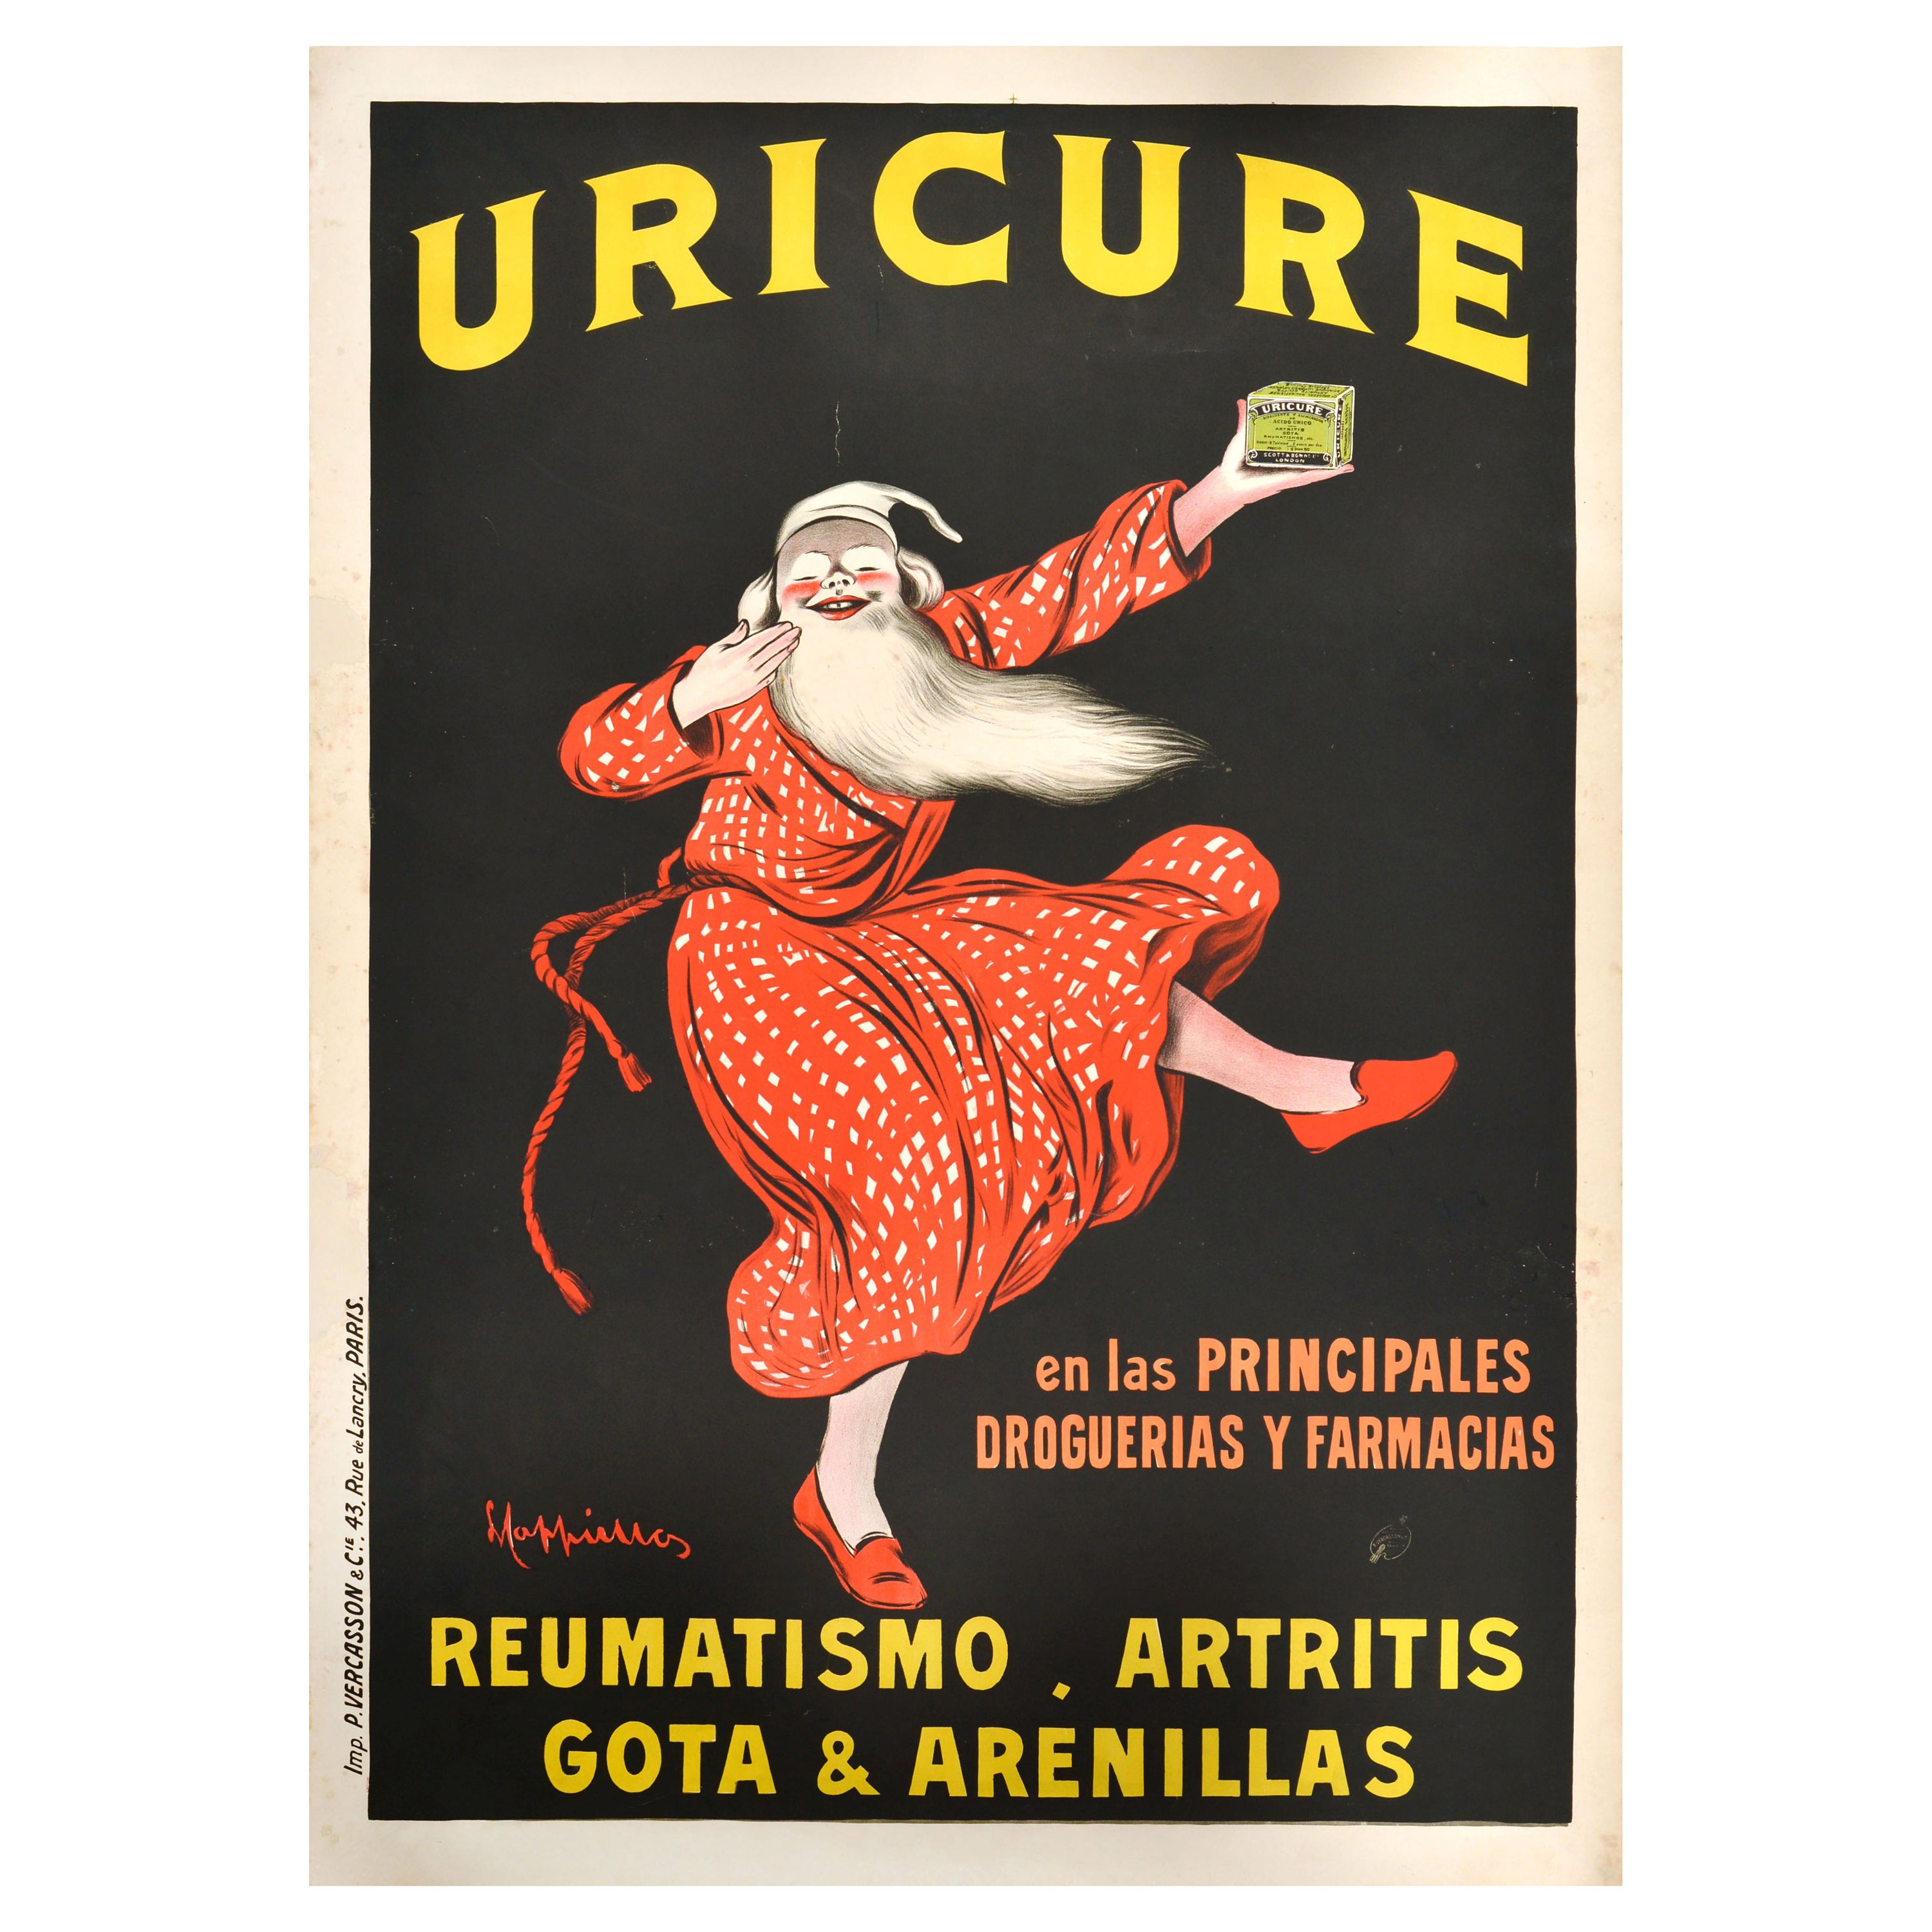 Affiche publicitaire d'origine ancienne Uricure Medicine Leonetto Cappiello Design